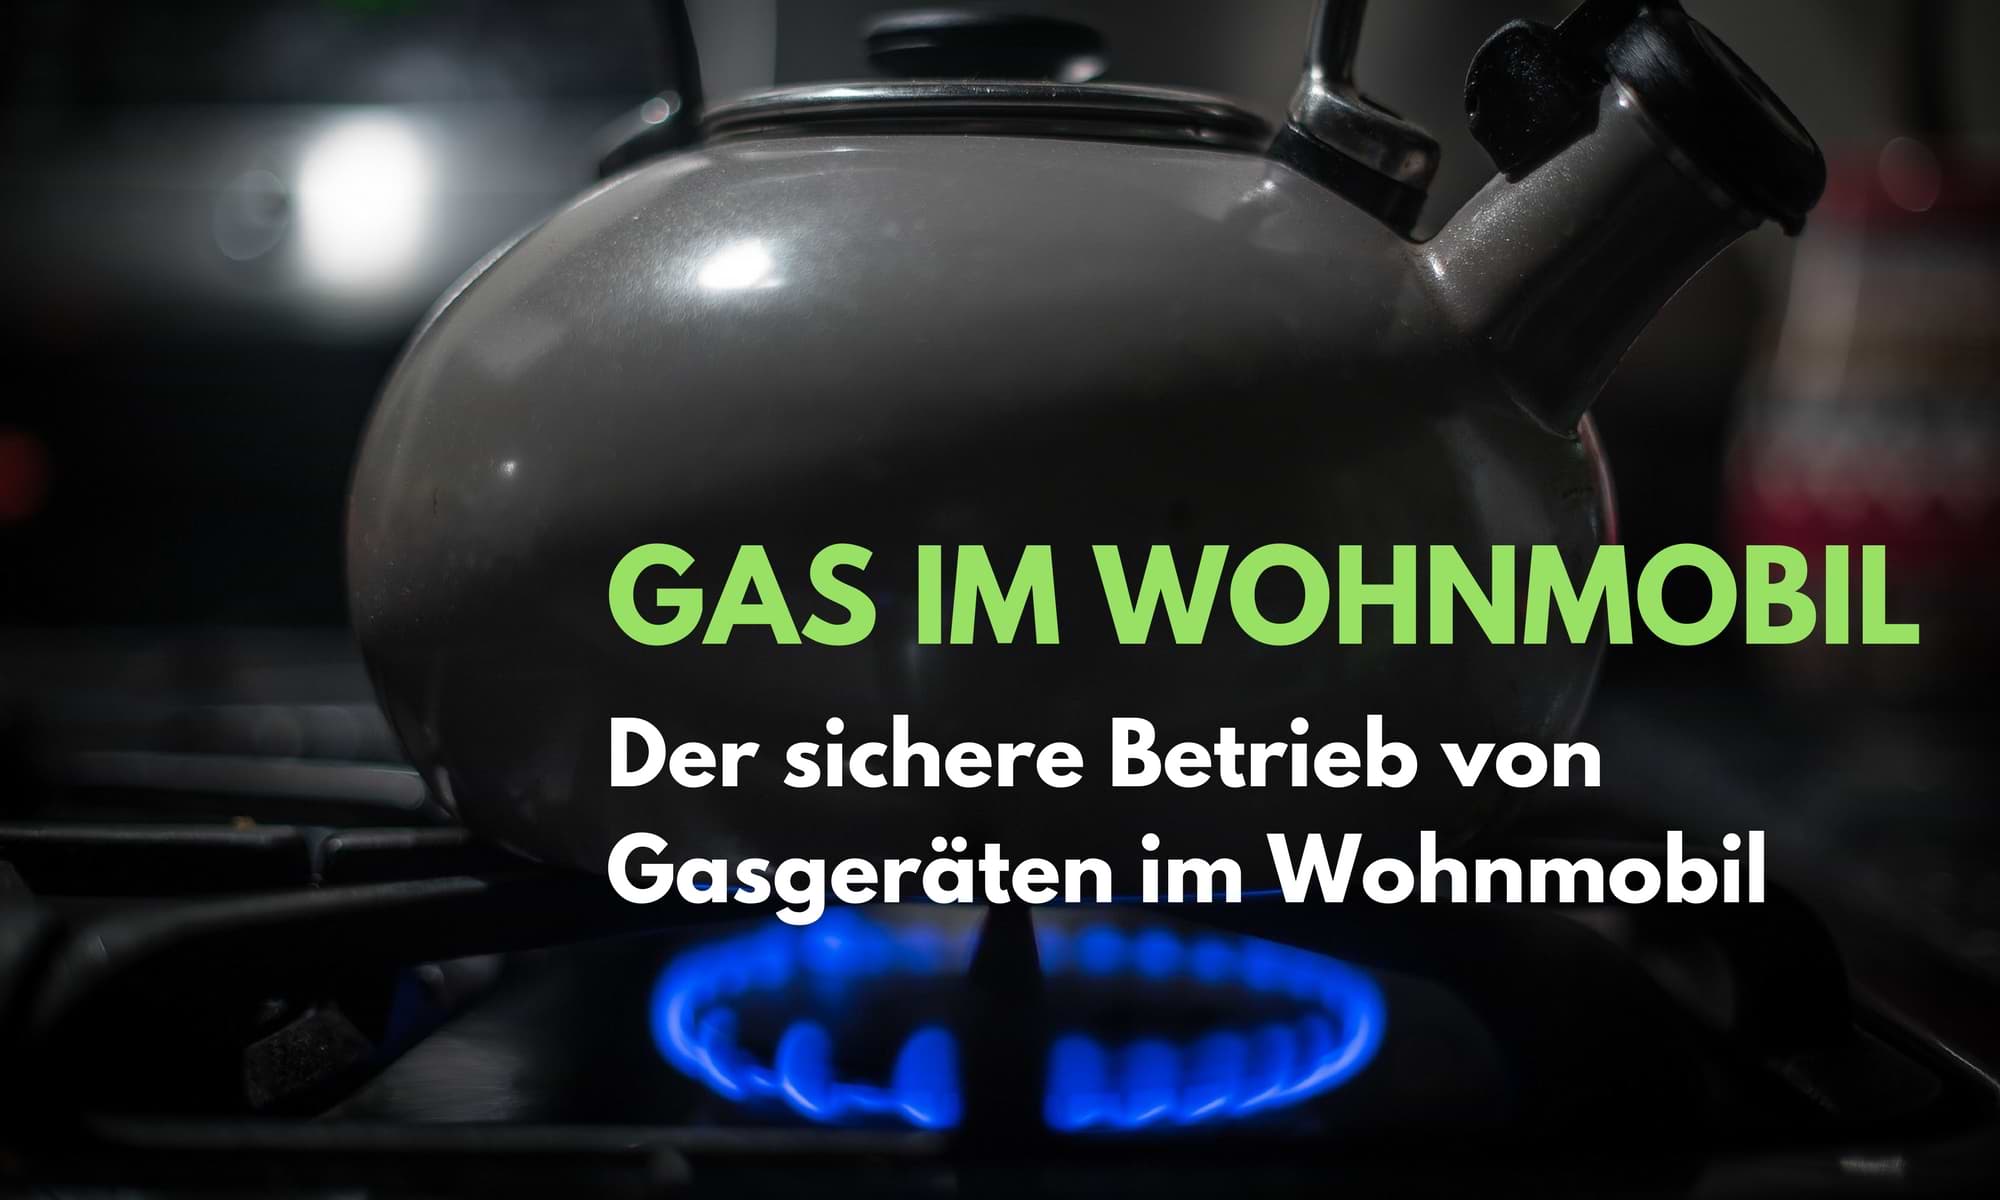 Gas im Wohnmobil – Heizen während der Fahrt